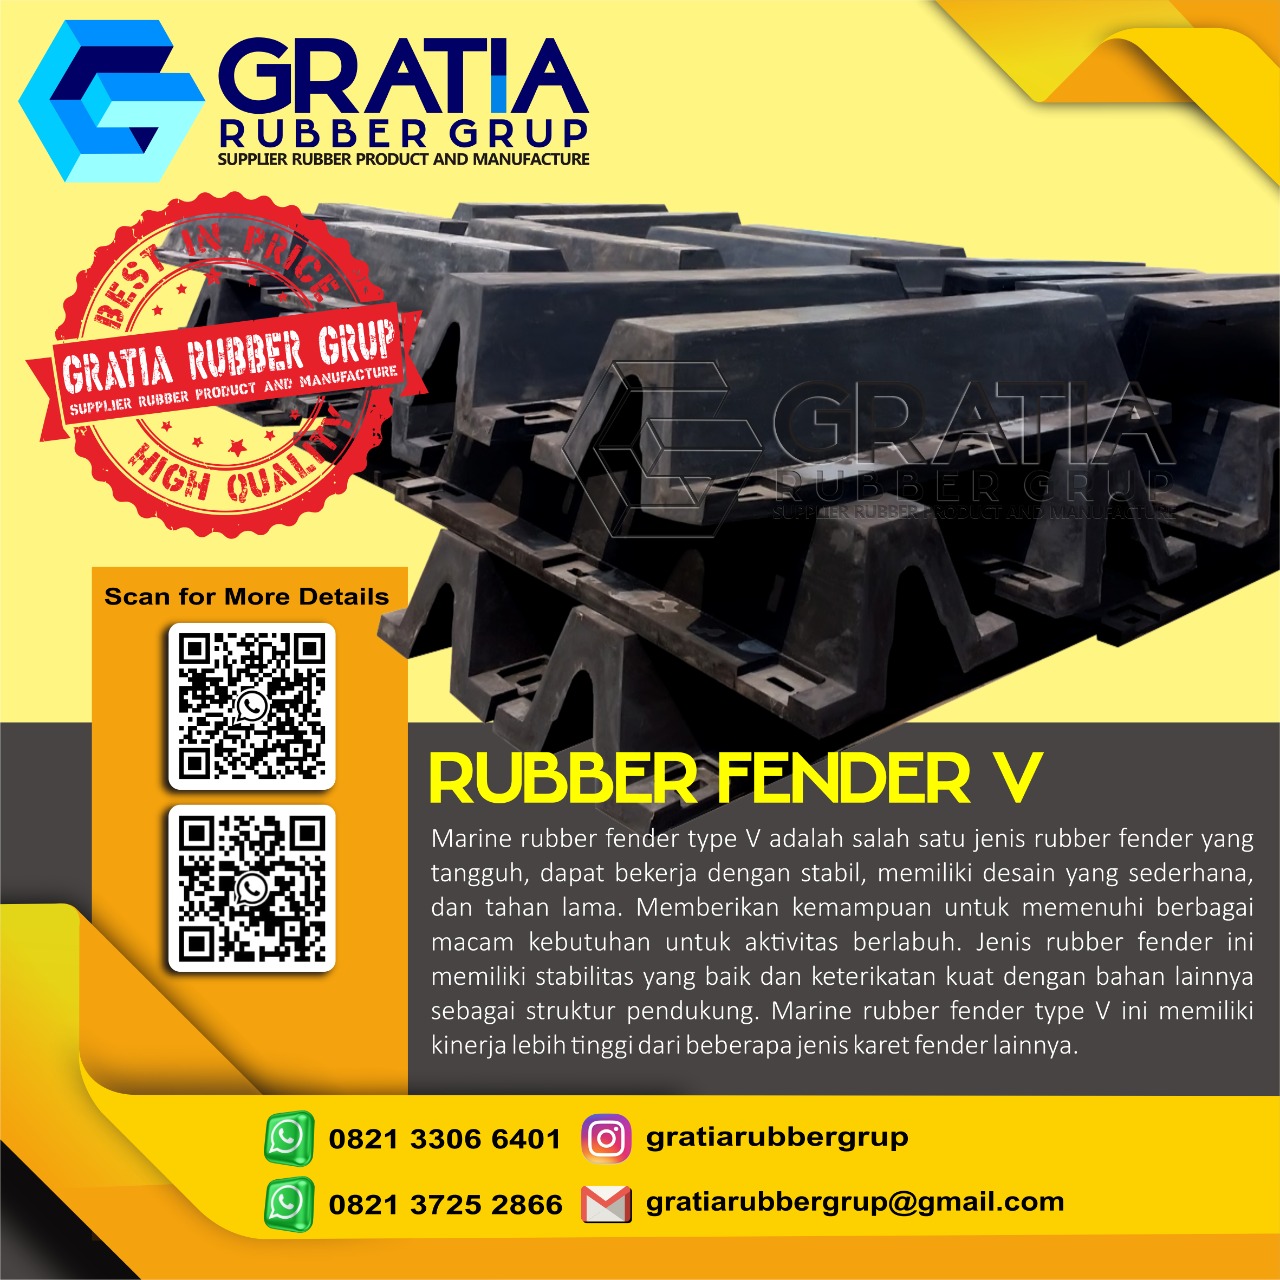 Jual Rubber Fender Murah Dan Berkualitas  Melayani Pengiriman Ke Pagar Alam Sumatera Selatan Hub 0821 3306 0461